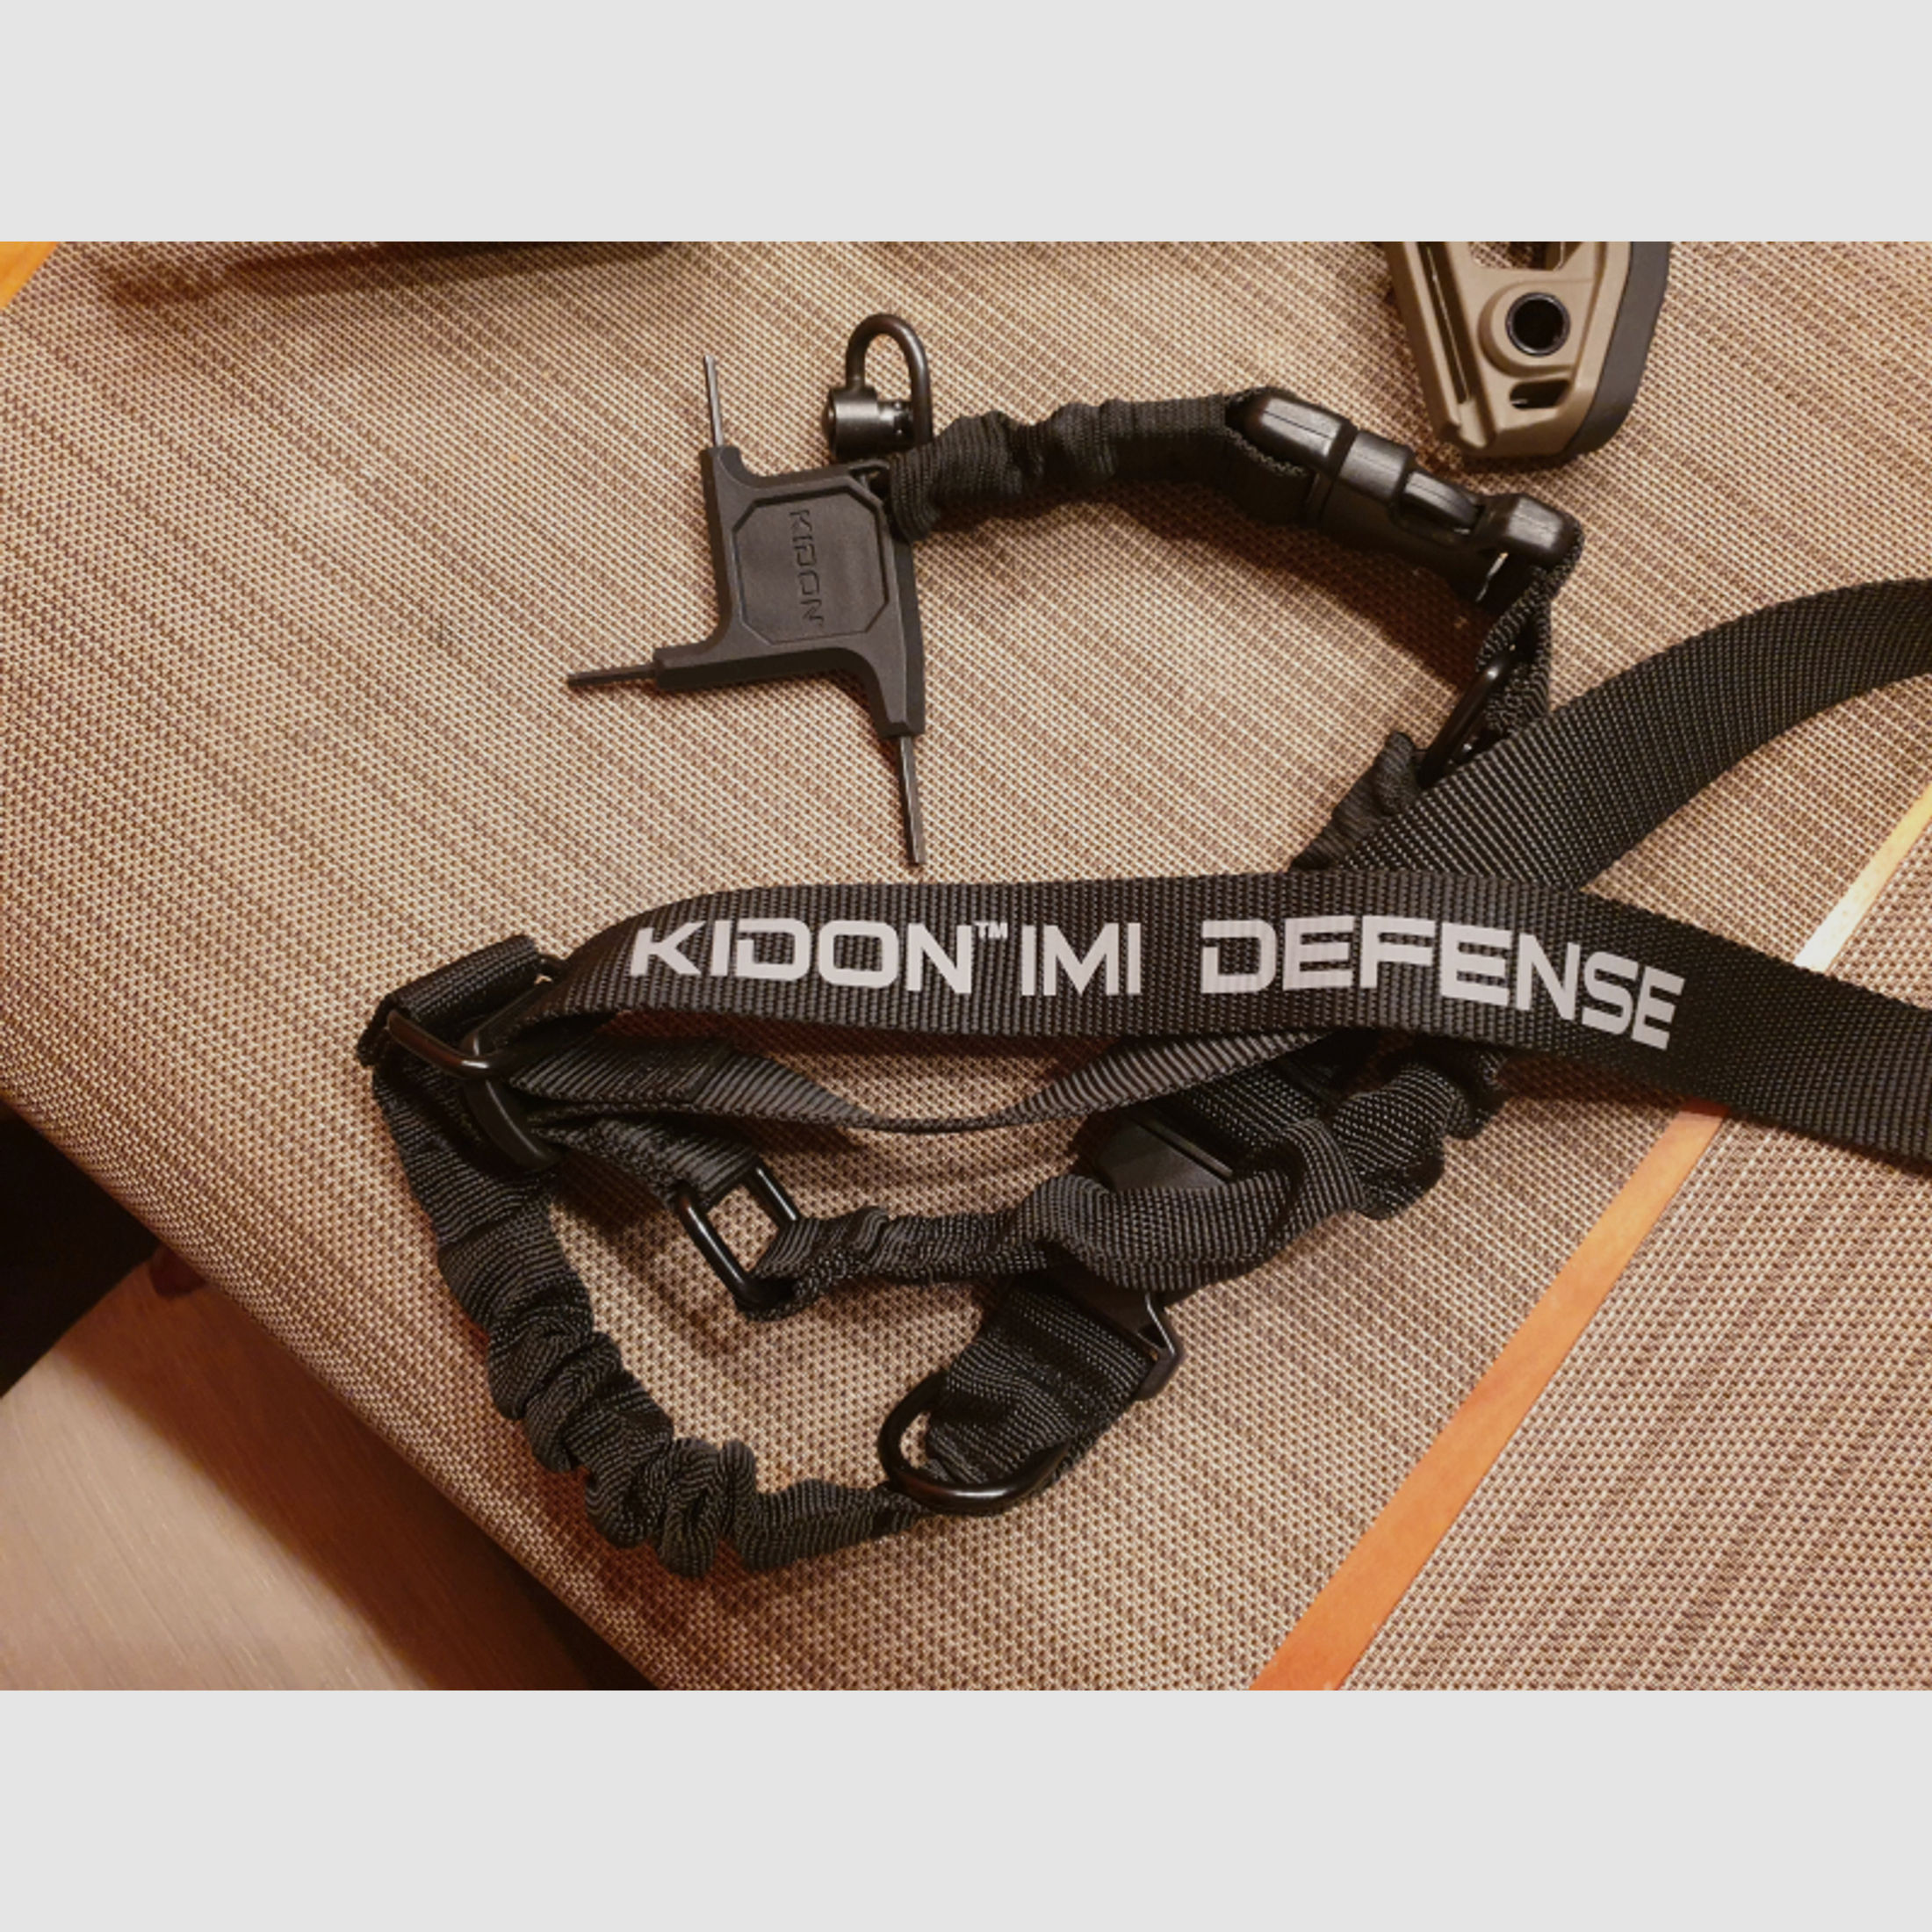 IMI Defense Kidon Schaft Anschlagschaft für Glock tan coyote fde